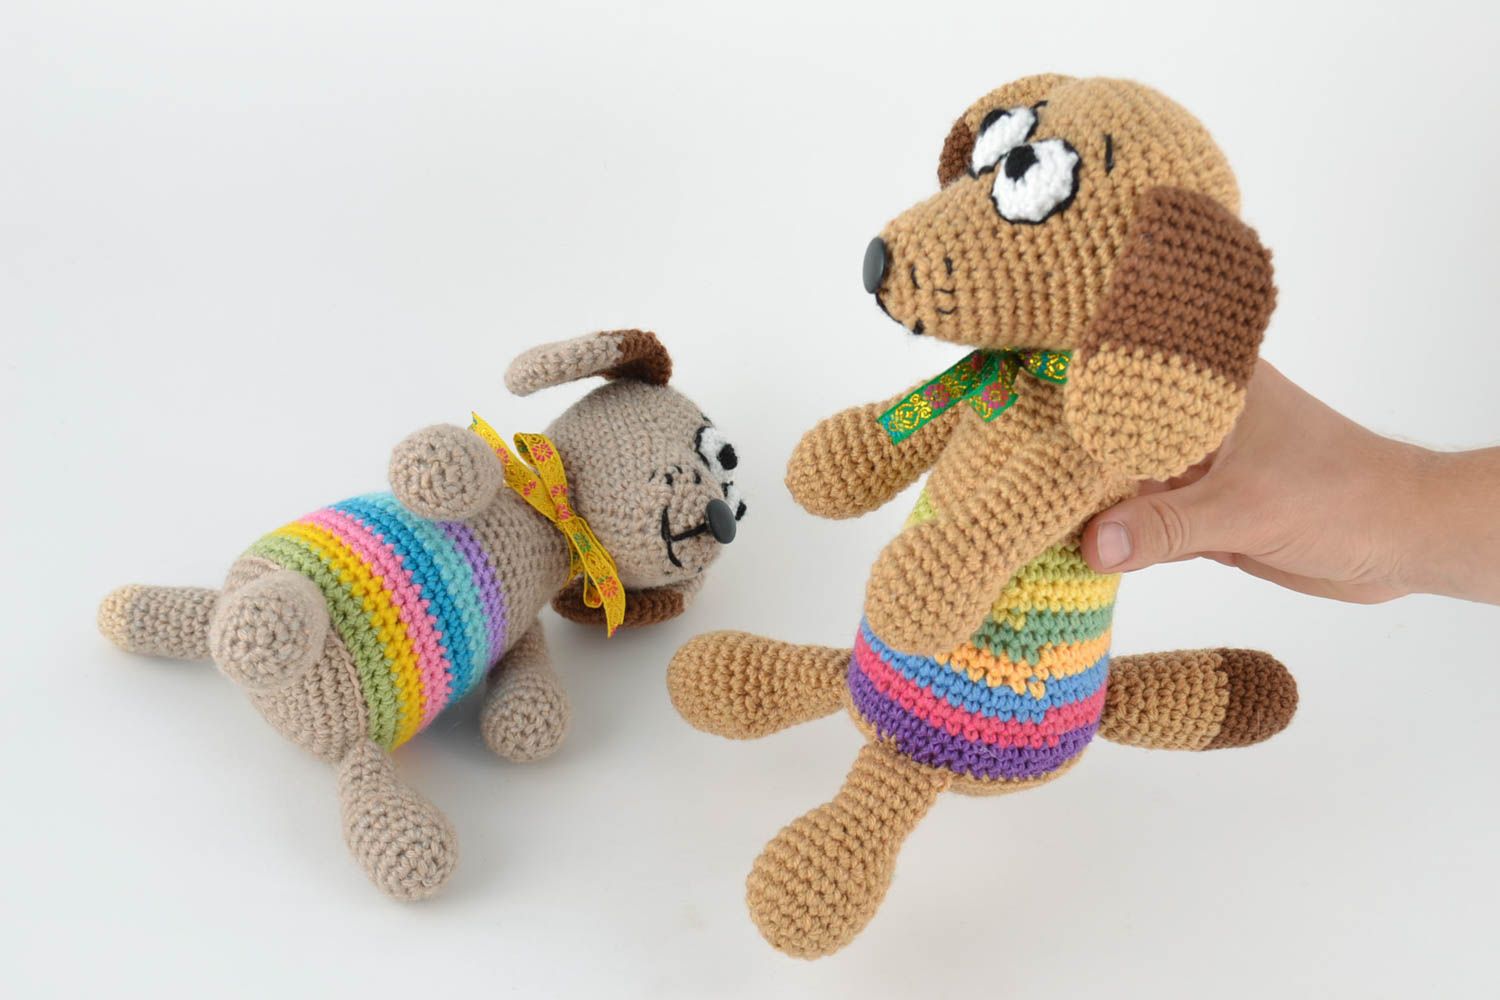 Мягкие вязаные игрушки две собачки набор из шерсти и полушерсти ручной работы фото 5